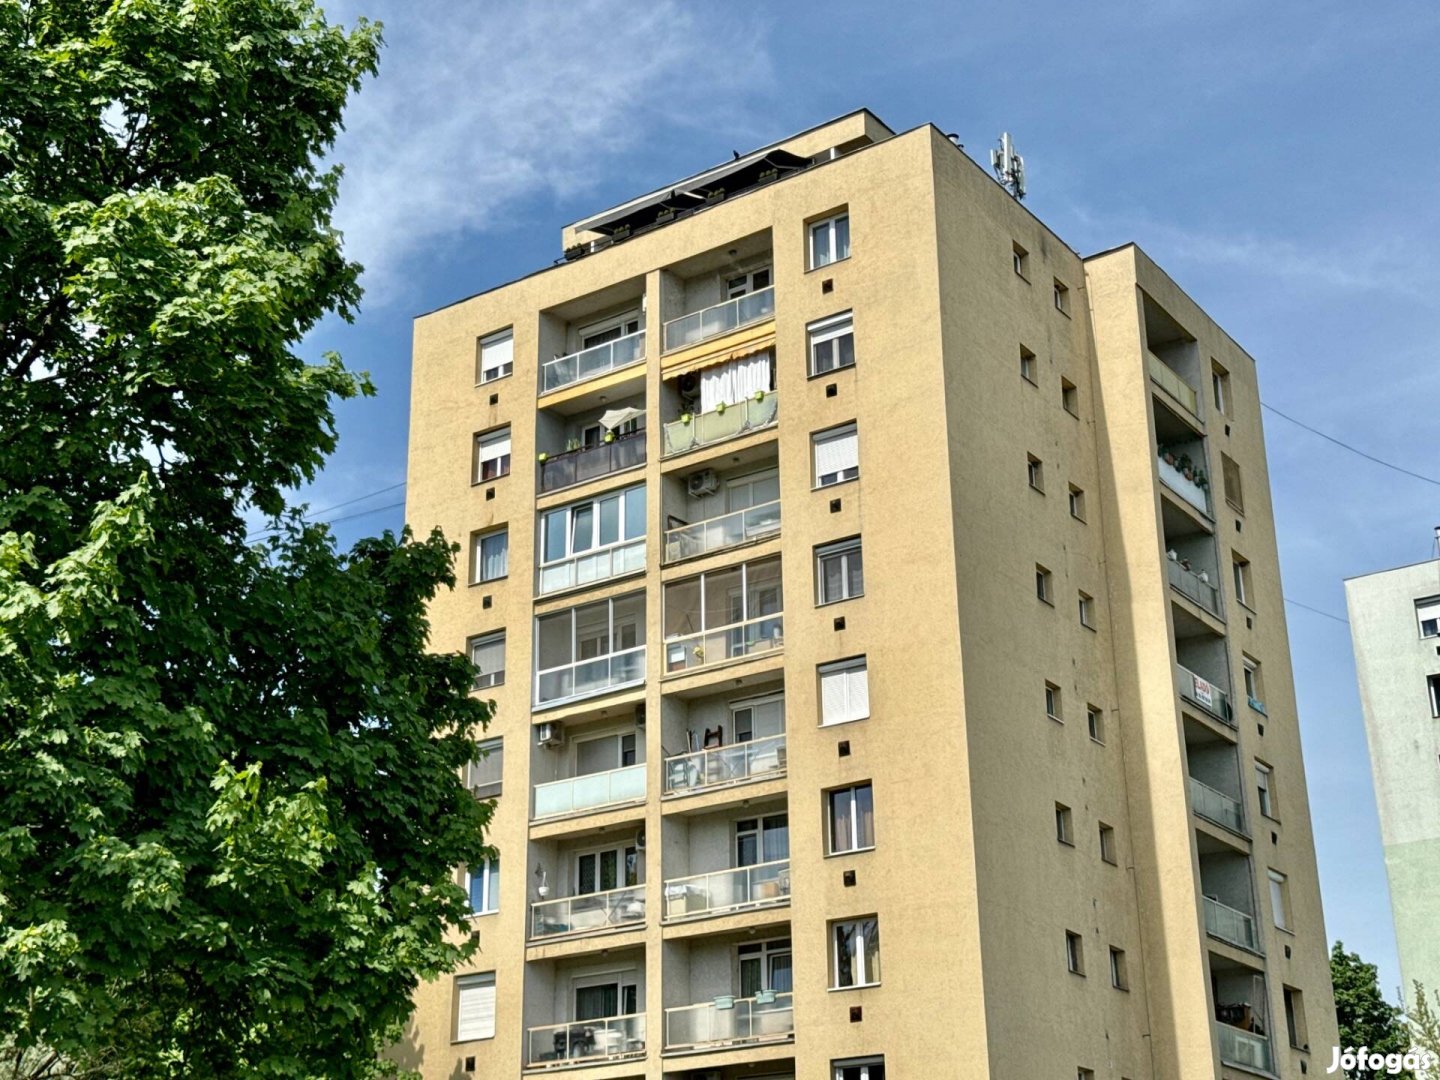 Miskolc Szentpéteri kapuban 6 emeleti 52 m2-es 2 szobás erkélyes lakás